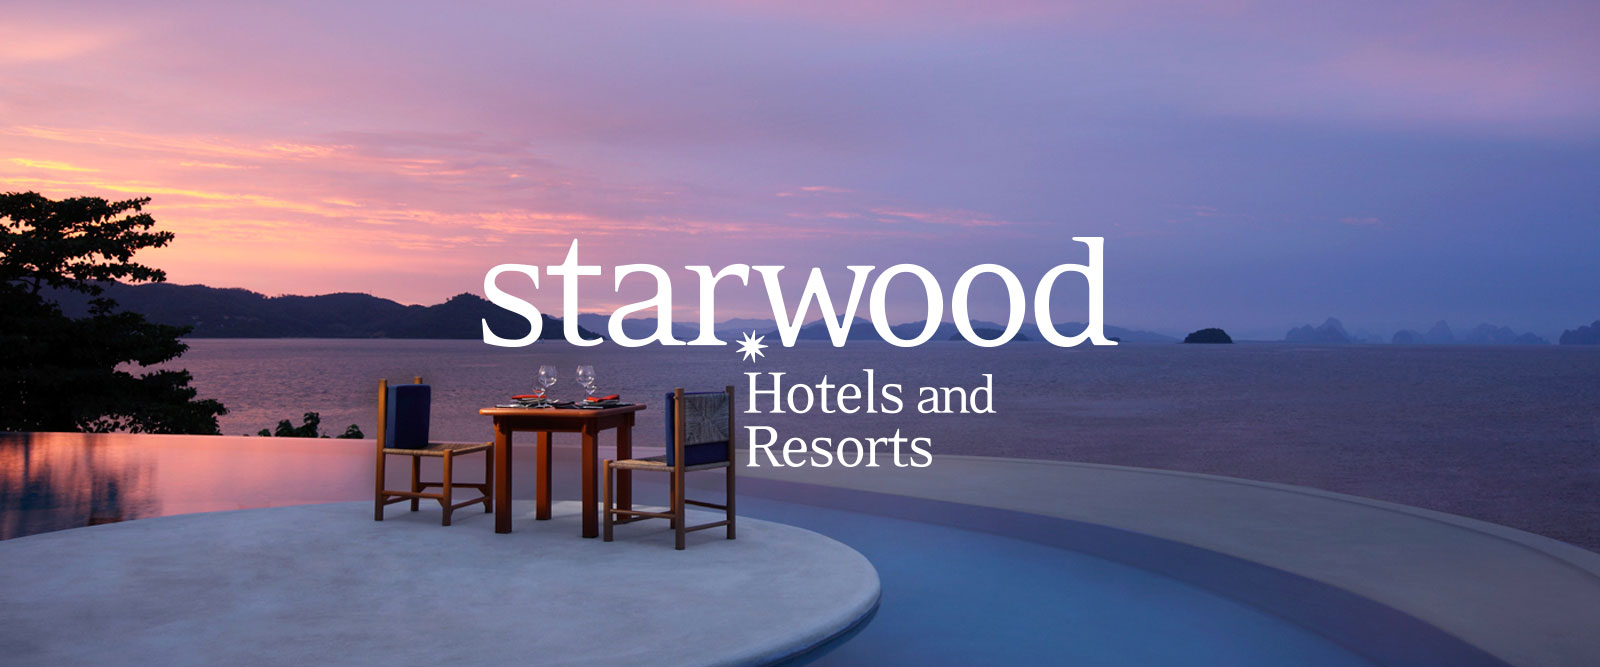 (Image: Starwood Hotels)